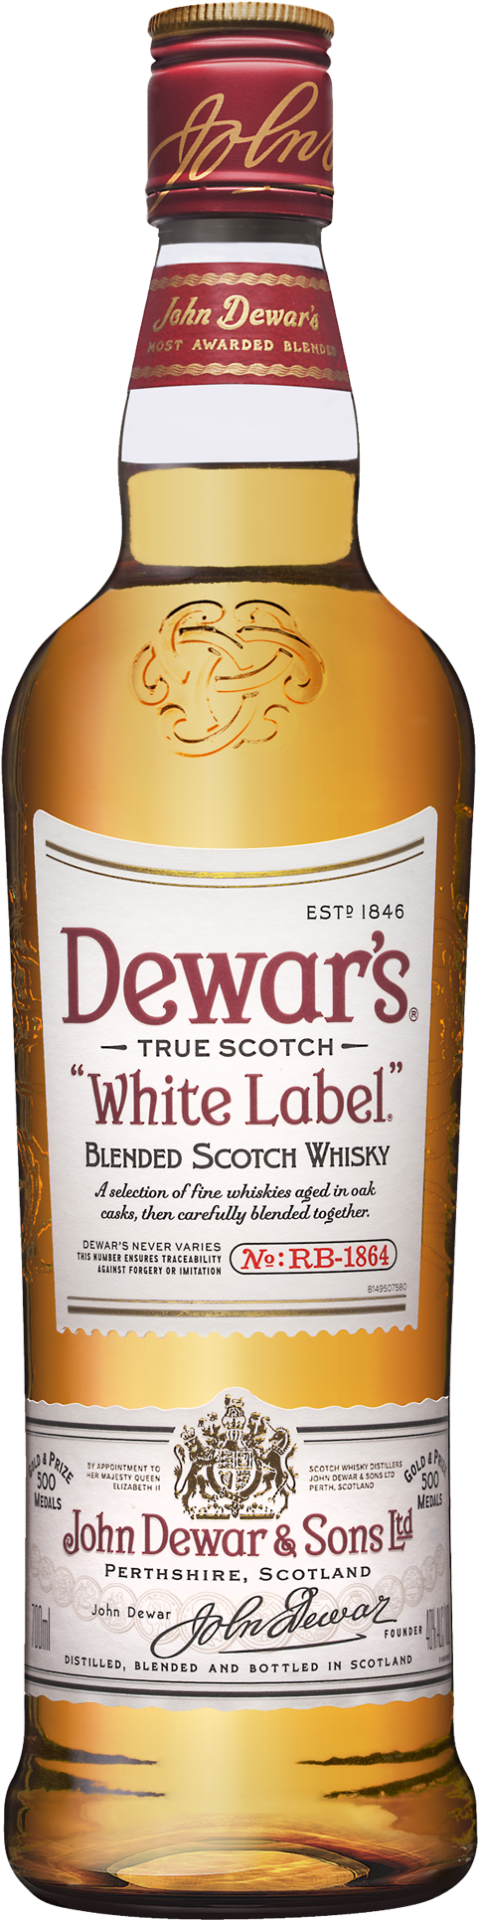 239-2390700_dewars-white-label-scotch-whisky-700ml-bottle-dewars